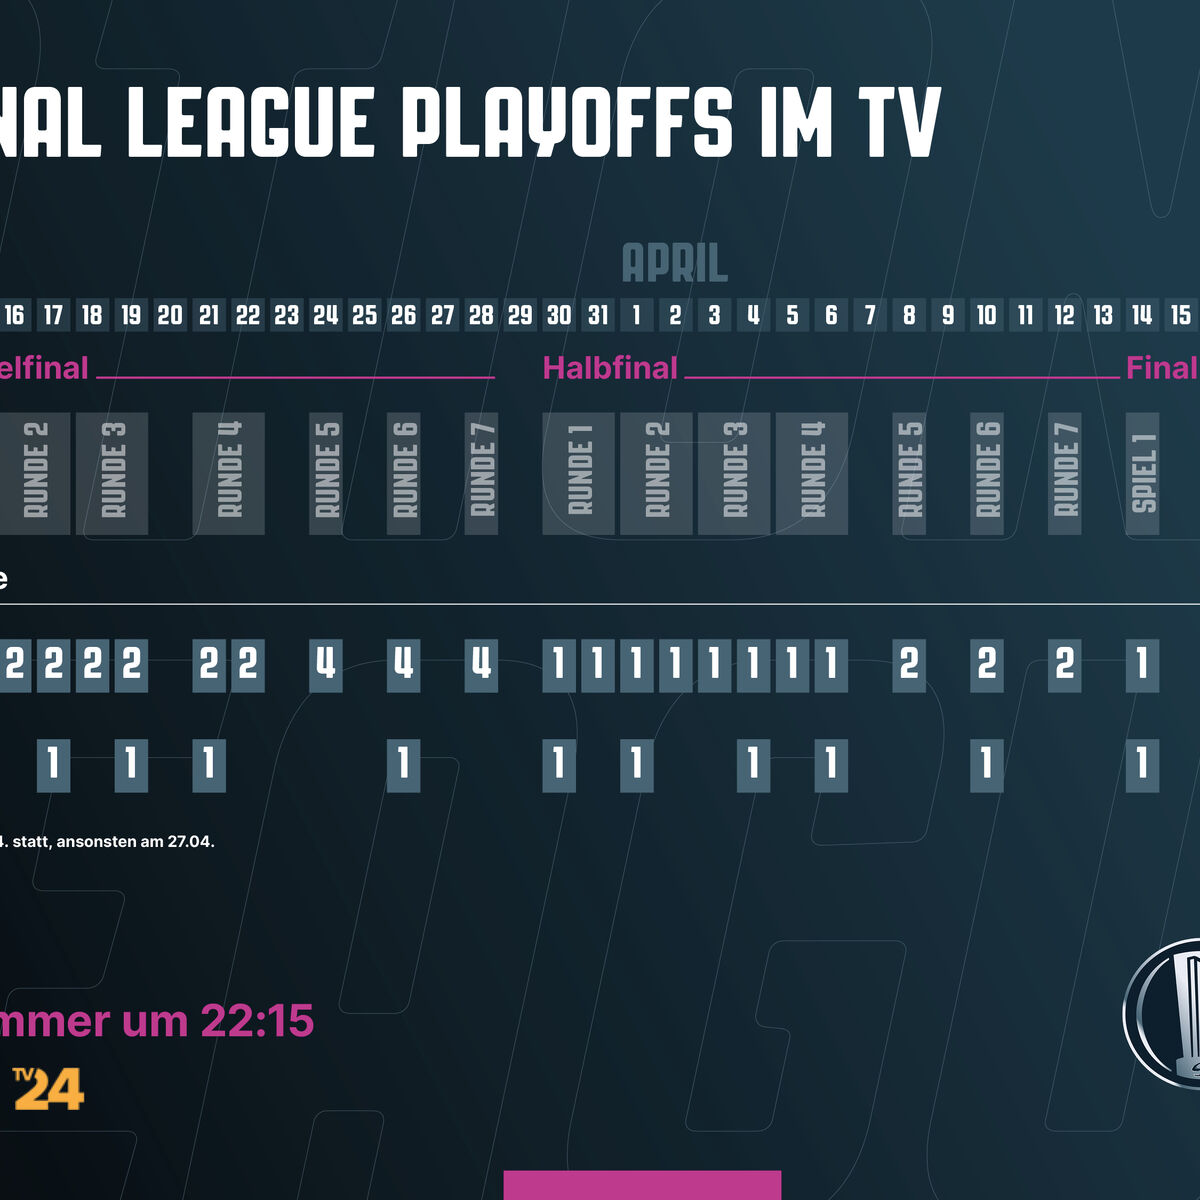 National League im TV erfreuliche Zwischenbilanz und Ausblick Playoffs 2022/2023 Presseportal-schweiz.ch